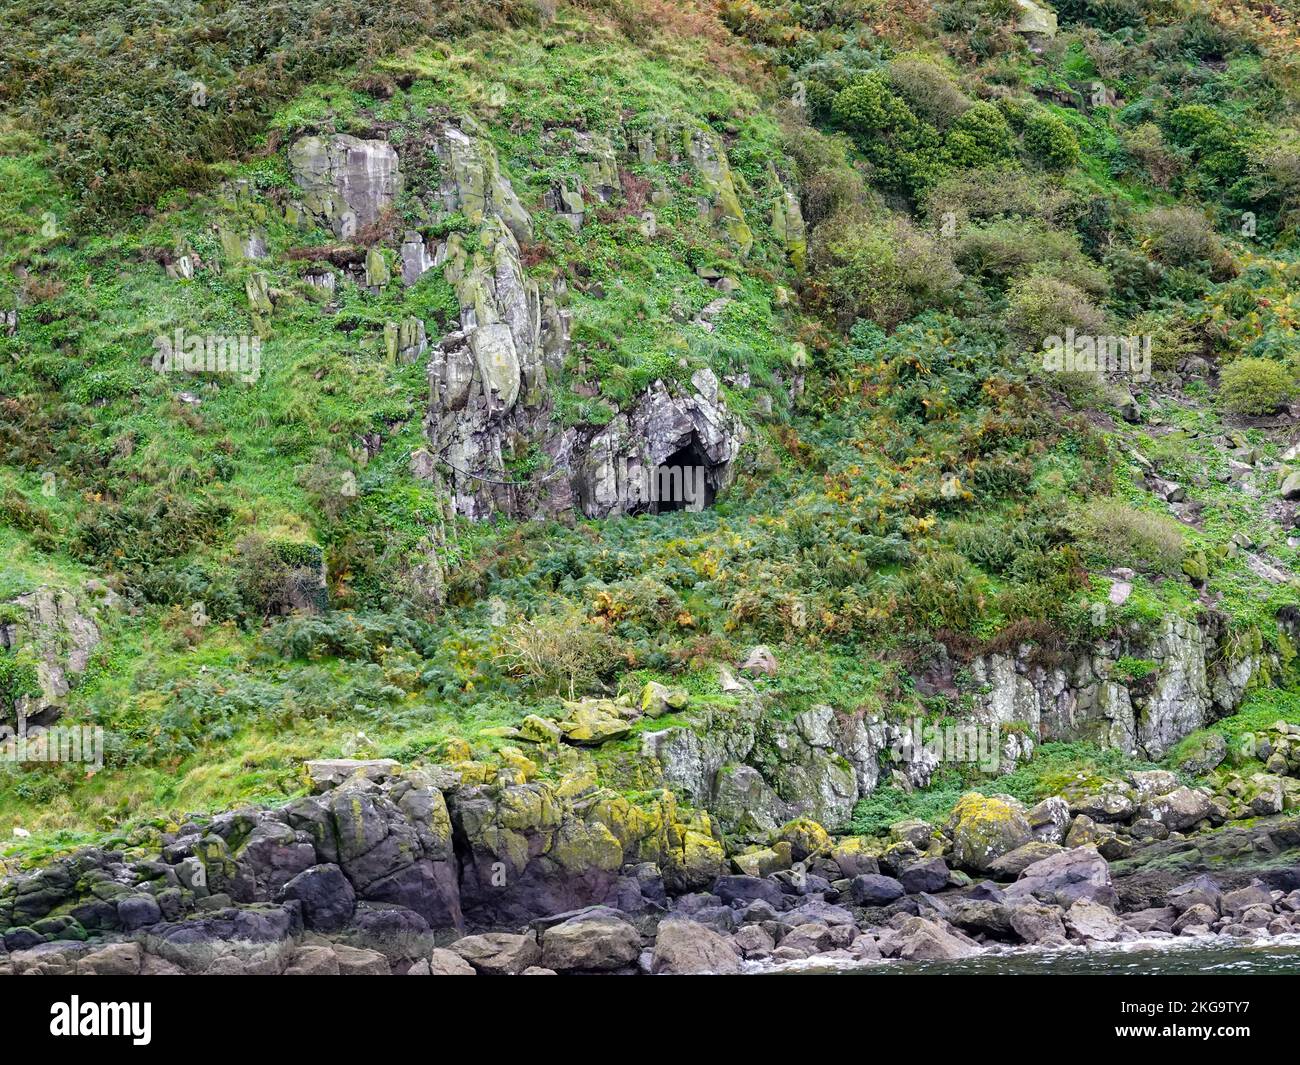 Grotte ouvrant sur le côté rocheux de l'île de Little Cumbrae, située dans le Firth de Clyde, en Écosse, au Royaume-Uni. Banque D'Images